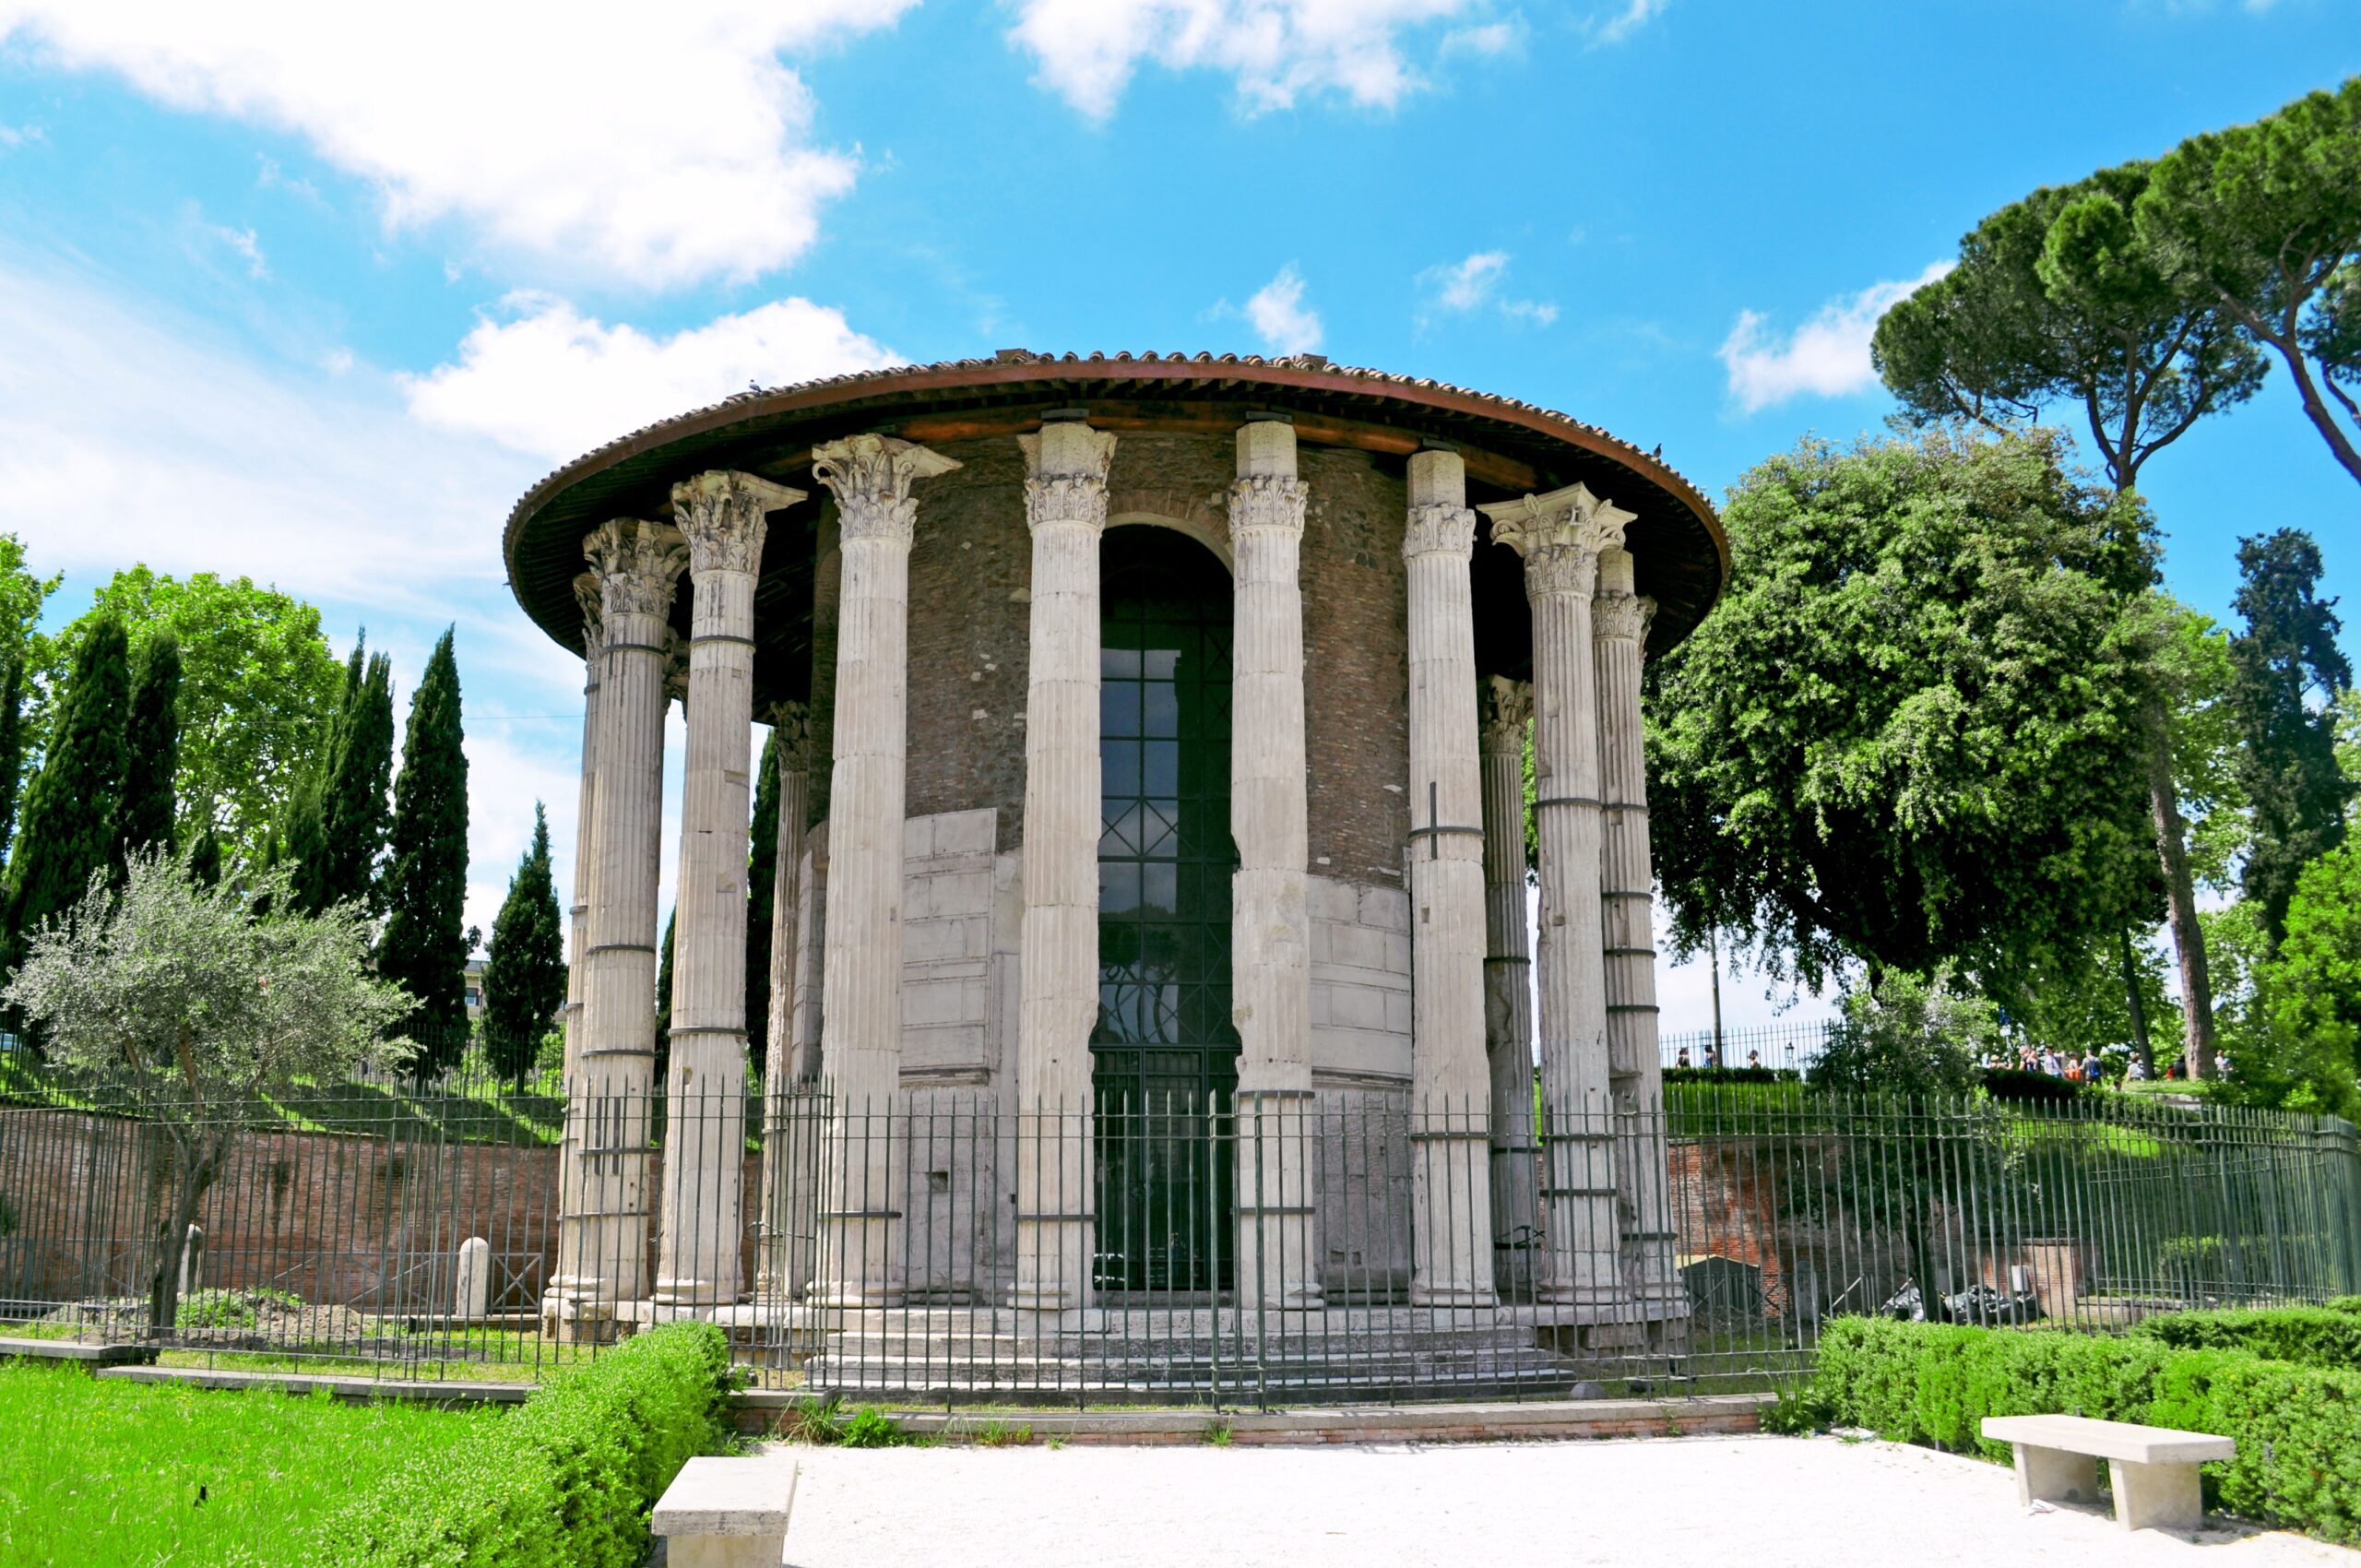 Temple of Portunus travertino